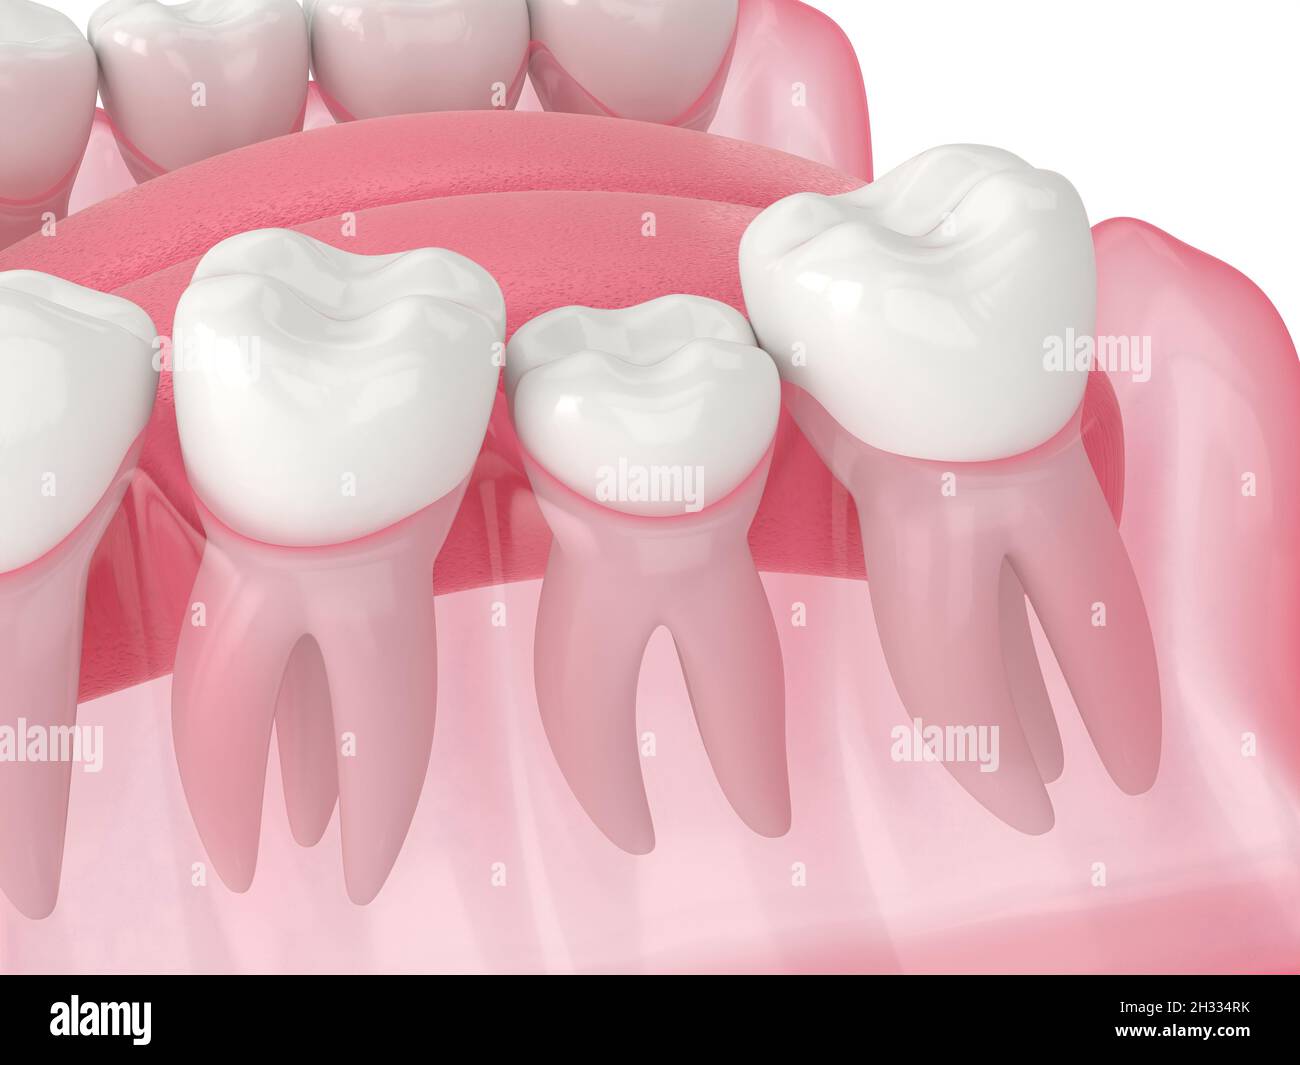 rendu 3d de la croissance des dents bloqué par deux molaires adjacentes.Notion : dents affectées Banque D'Images